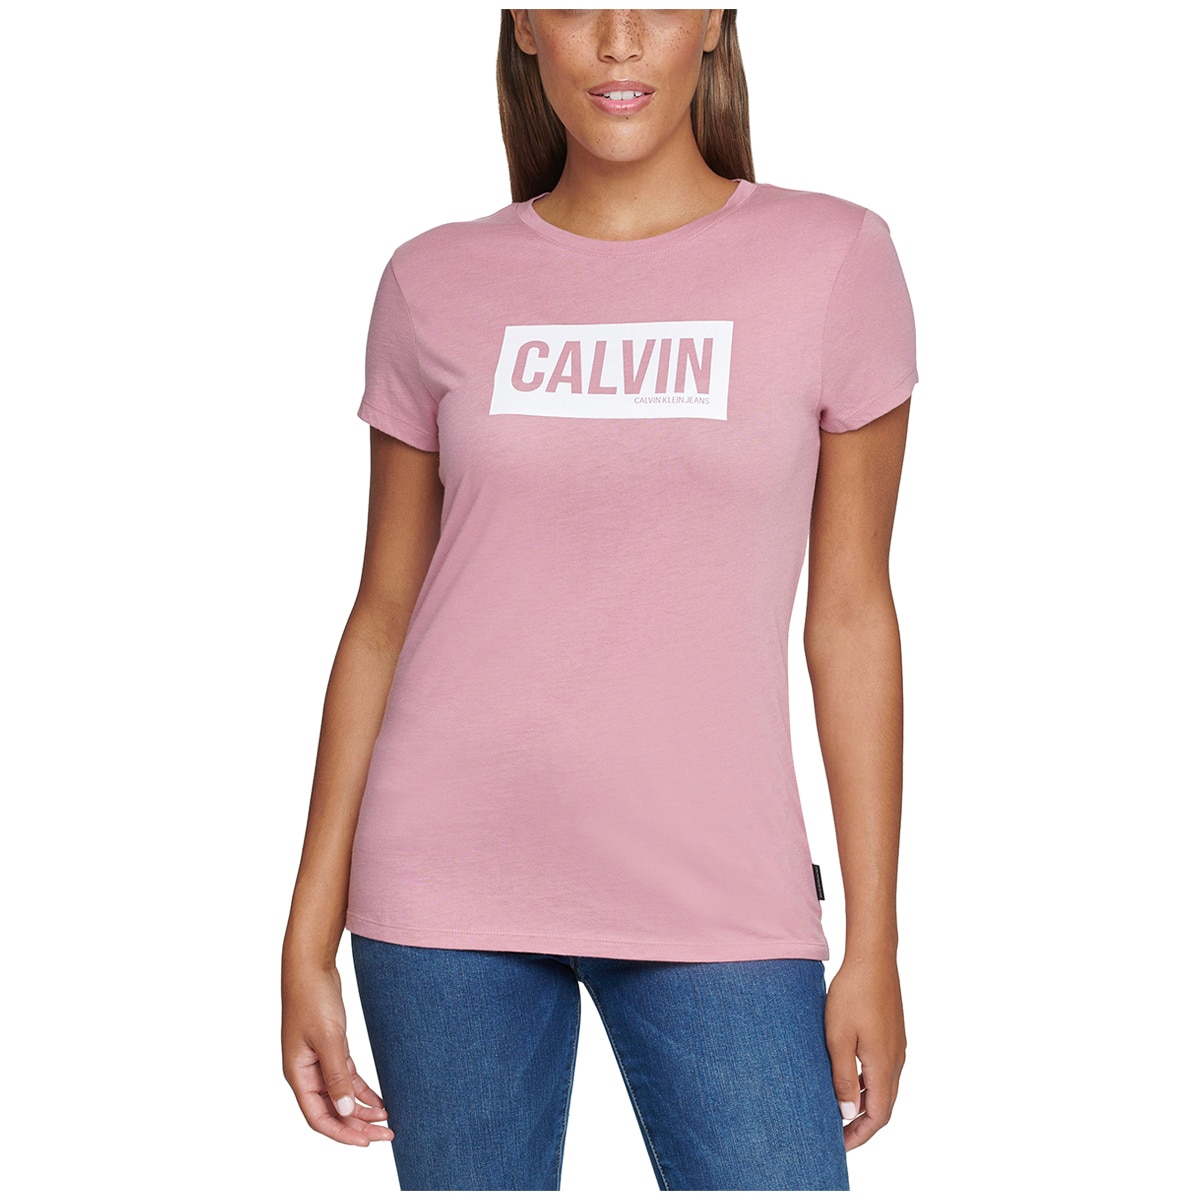 Calvin Klein Women's Logo Tee Costco Australia